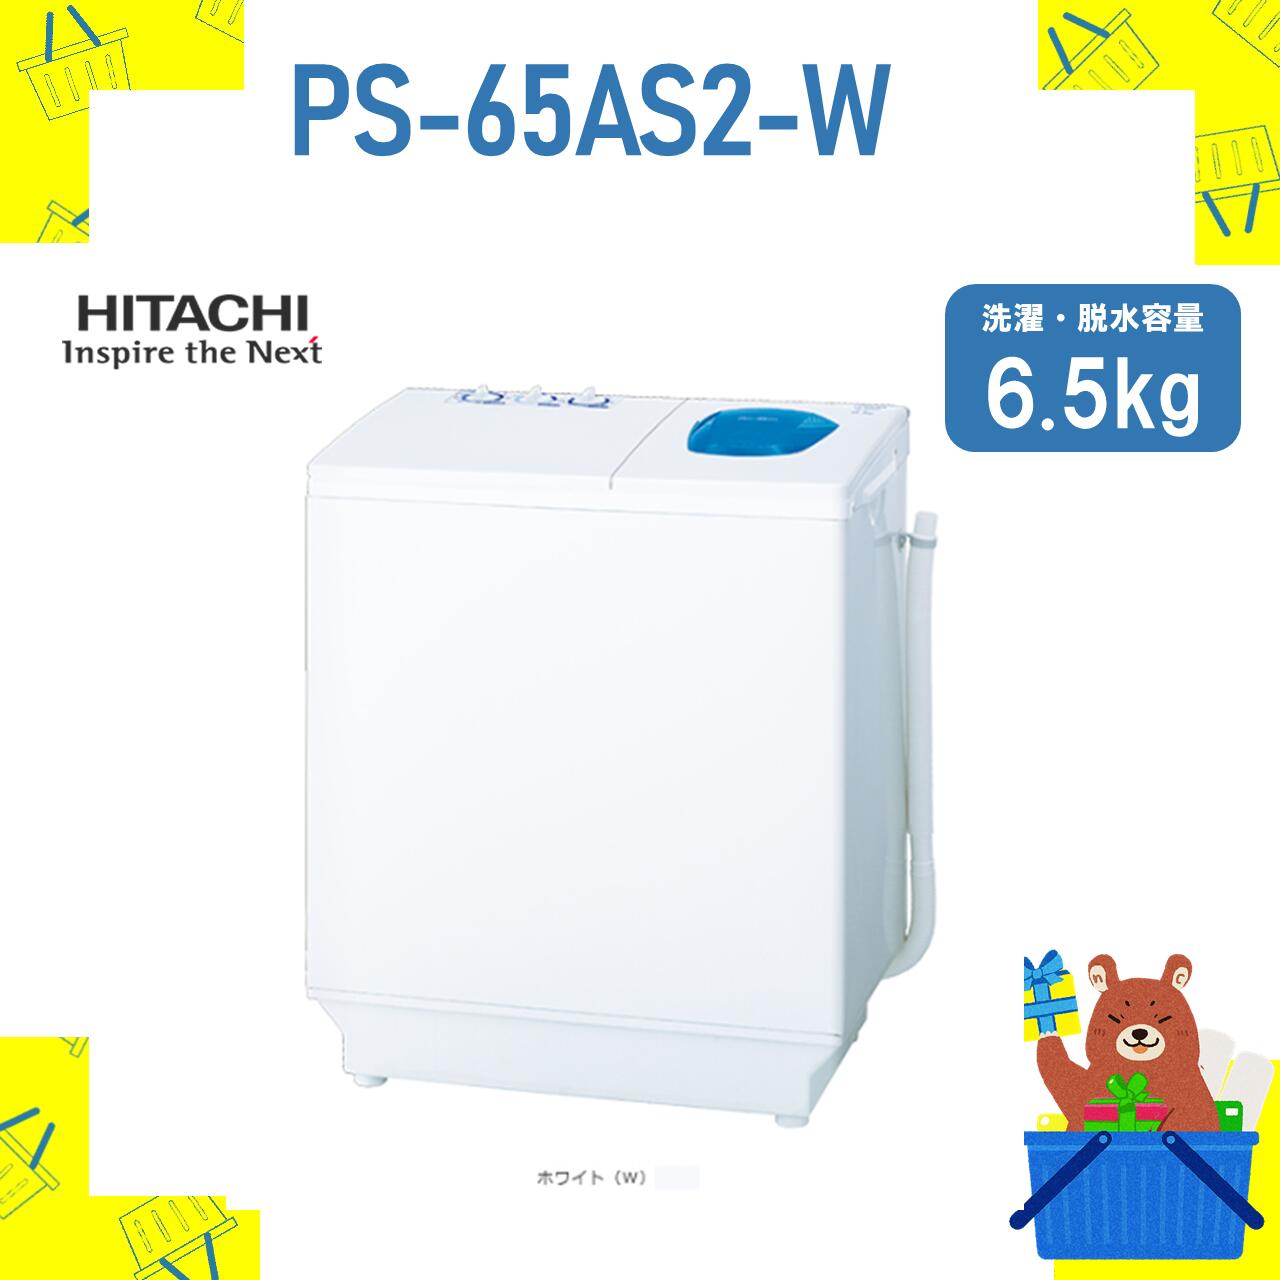 2槽式洗濯機 HITACHI 日立 PS-65AS2-W PS65AS2W 6.5kg 6.5キロ 新品 メーカー保証1年付き 青空 離島不可